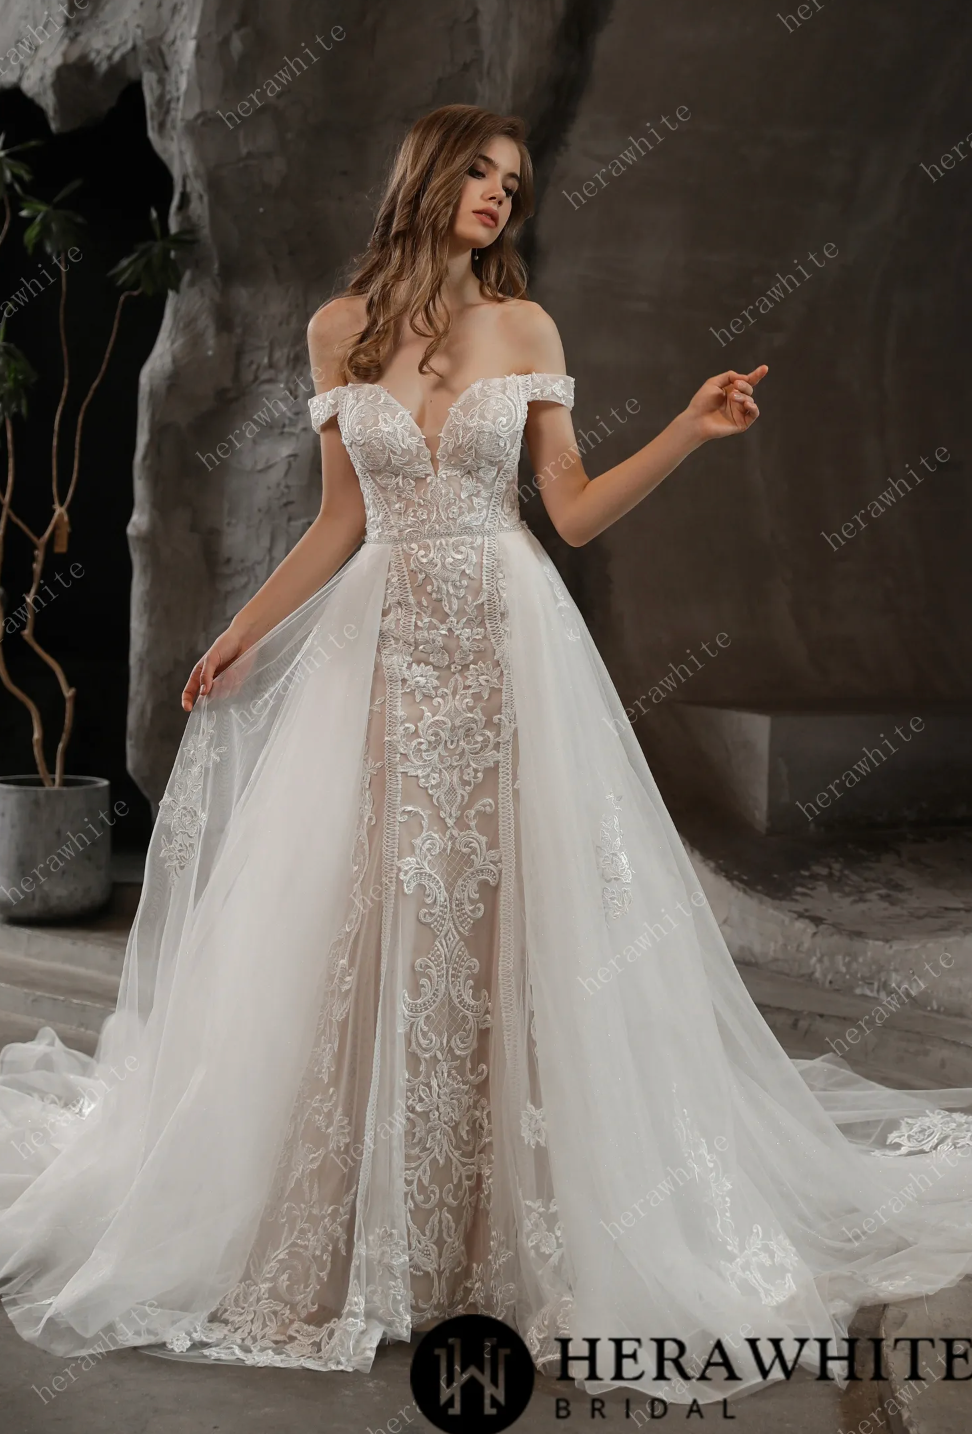 Wedding Dress Gallery – Eden Manor Bridal Boutique & Shop